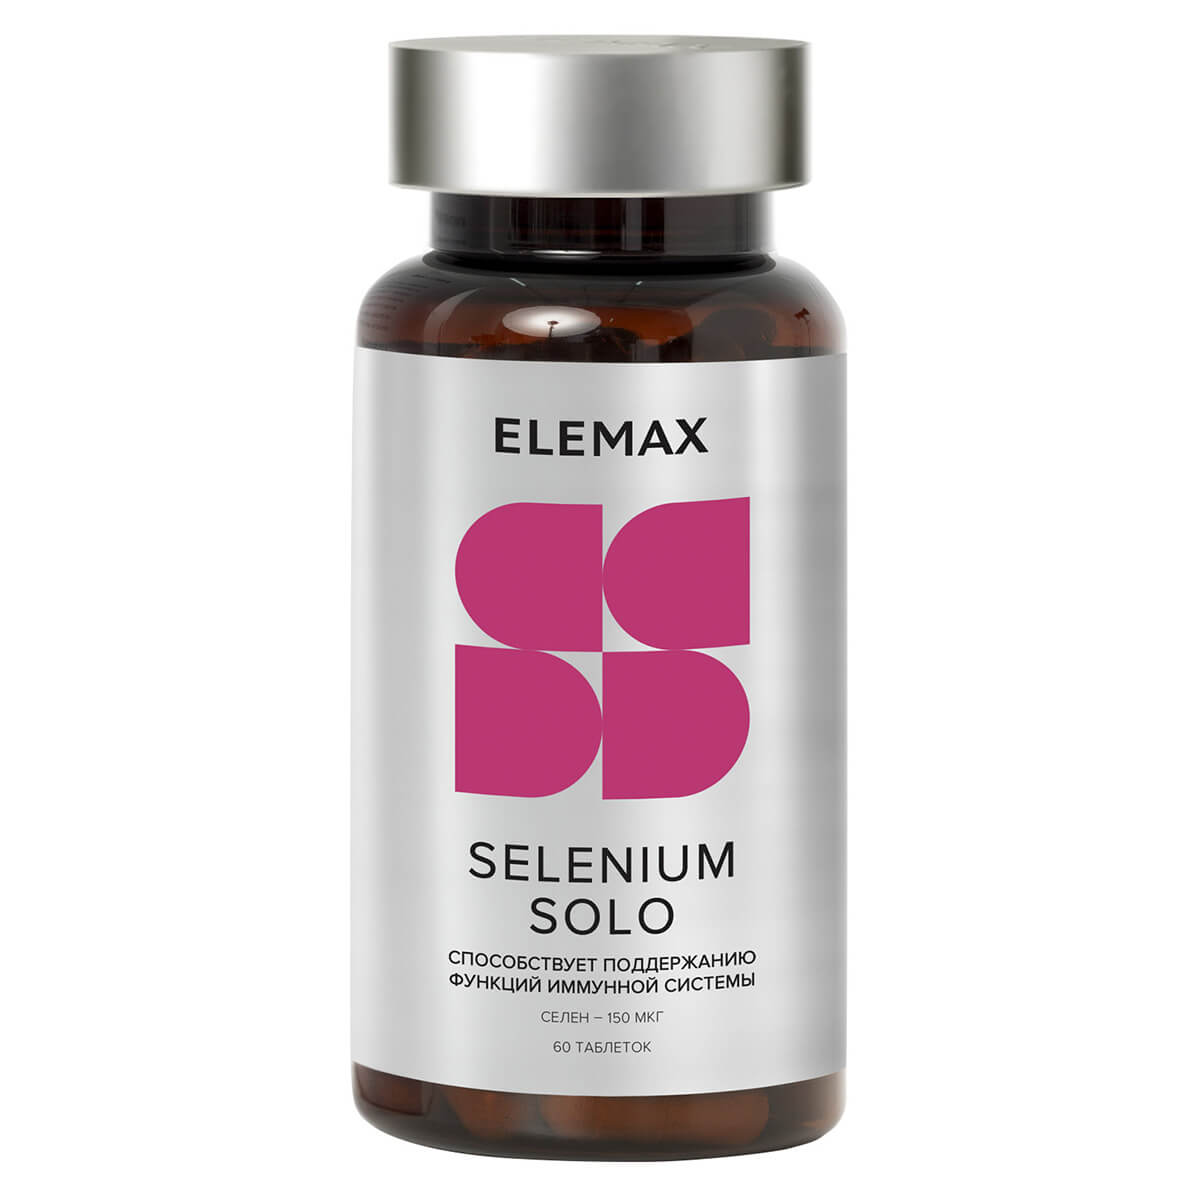 Биологически активная добавка к пище "Селен Соло", таблетки 60 шт массой 400 мг, Elemax